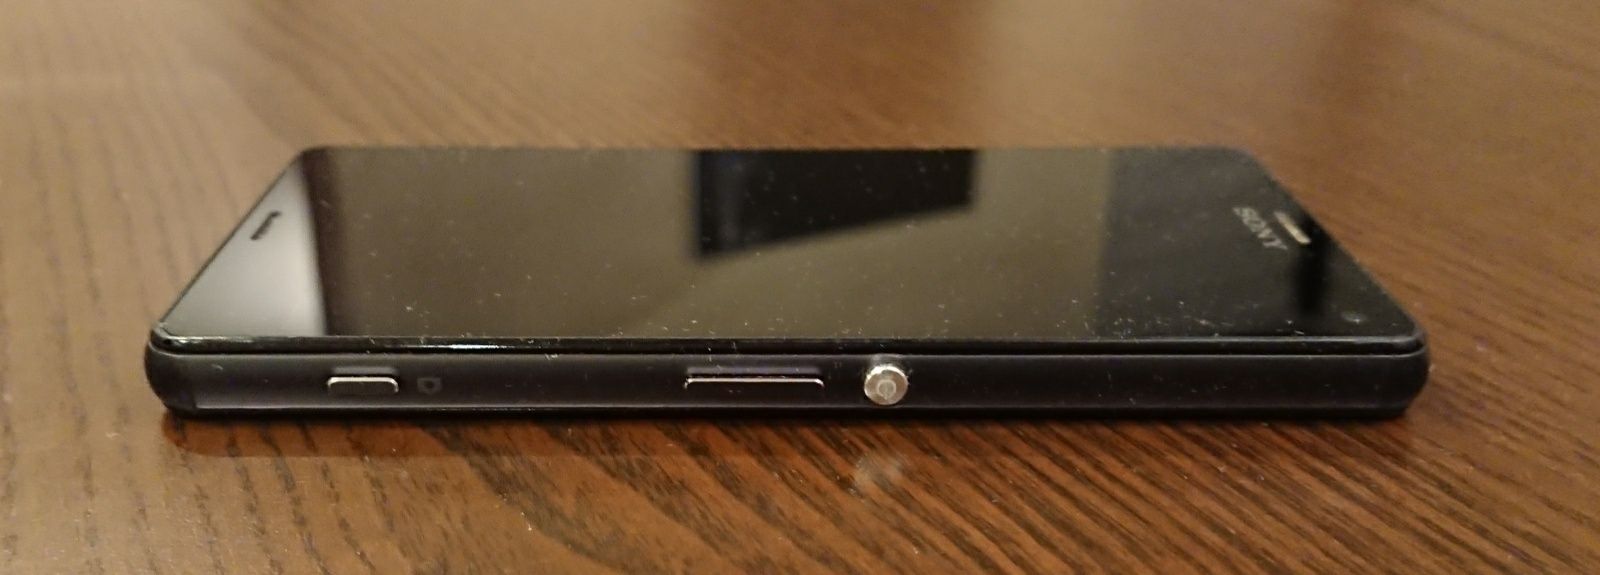 Sony Xperia Z3 Compact jak nowy, problem z dotykiem